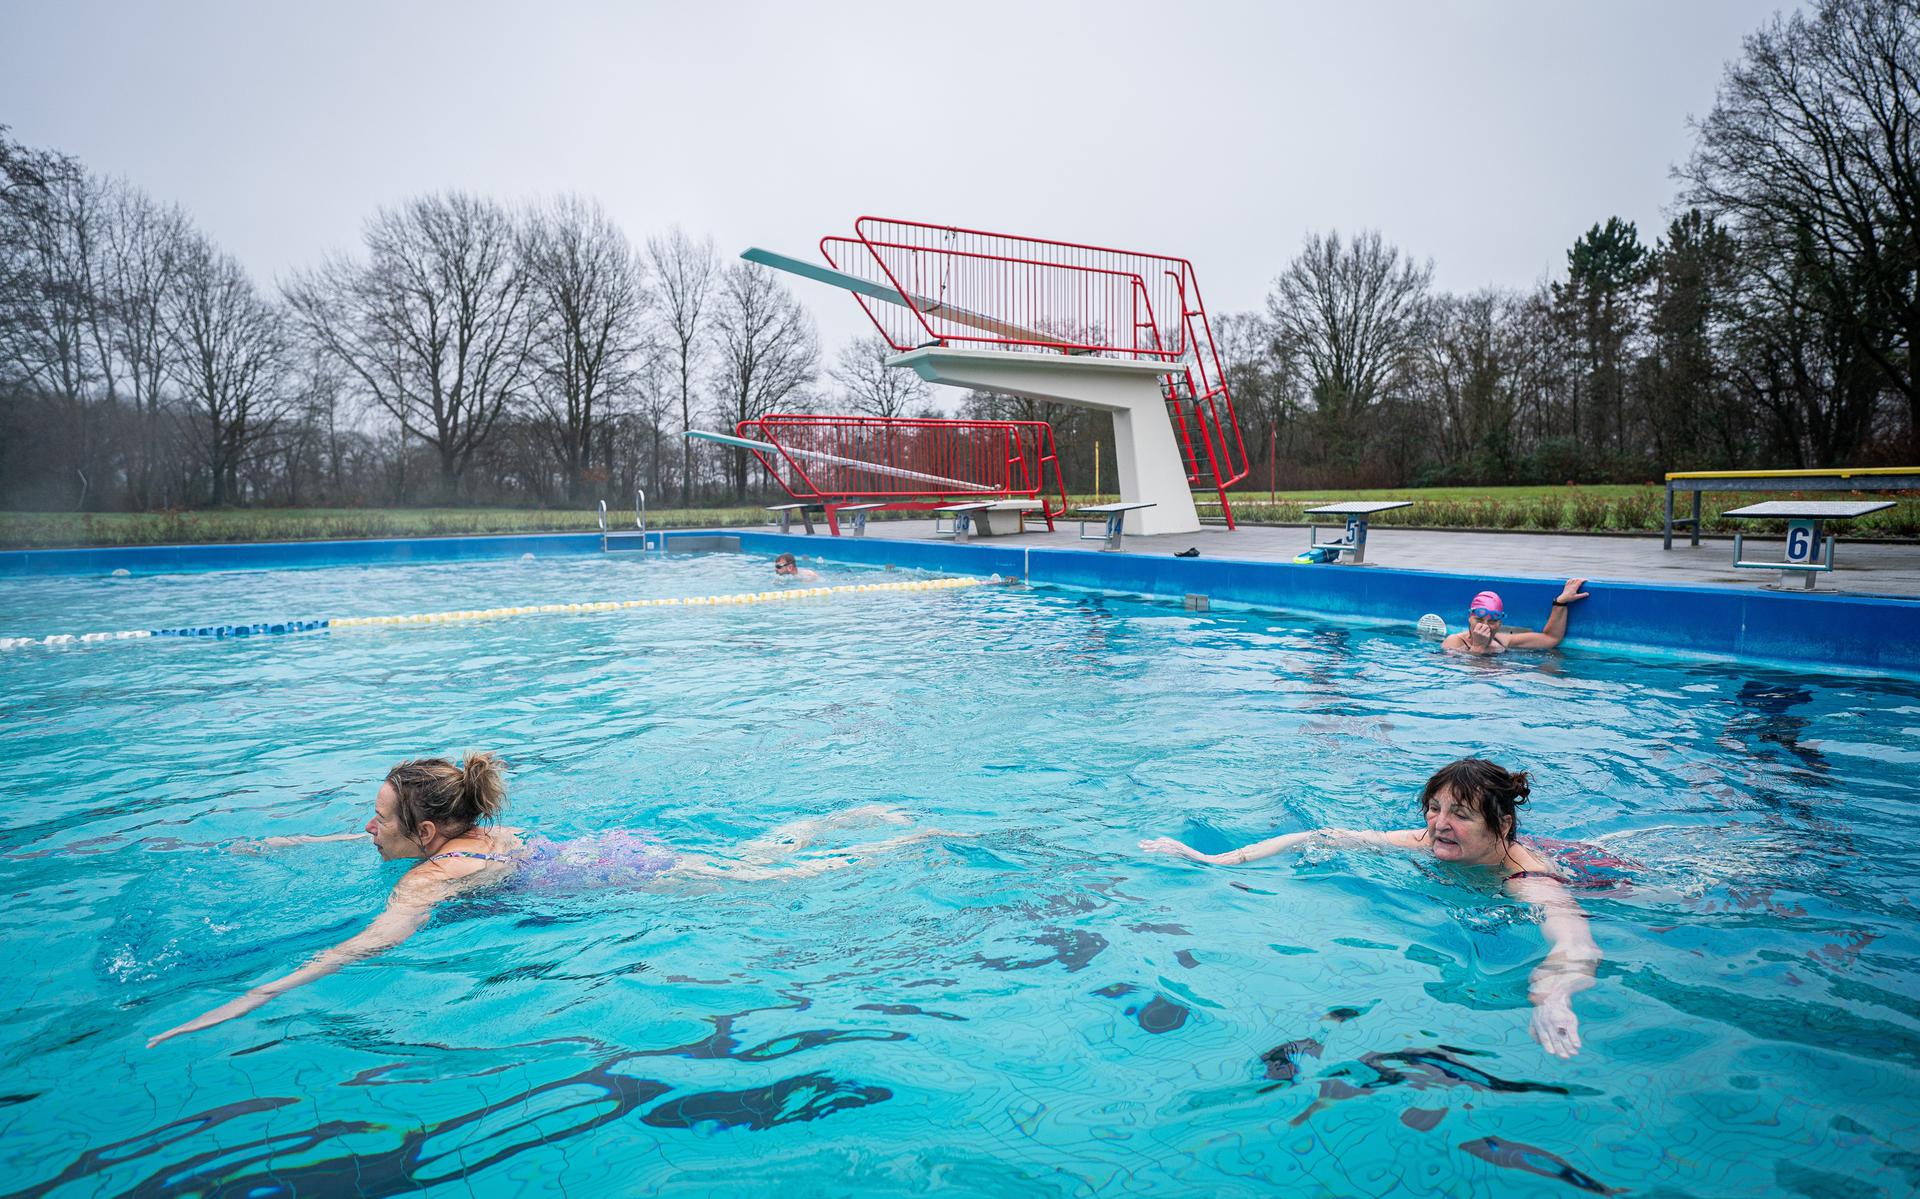 Assenaren die in een buitenbad willen zwemmen, moeten uitwijken naar het relatief kleine buitenbad van De Bonte Wever of openluchtbaden in de omliggende gemeenten, zoals De Leemdobben in Vries.